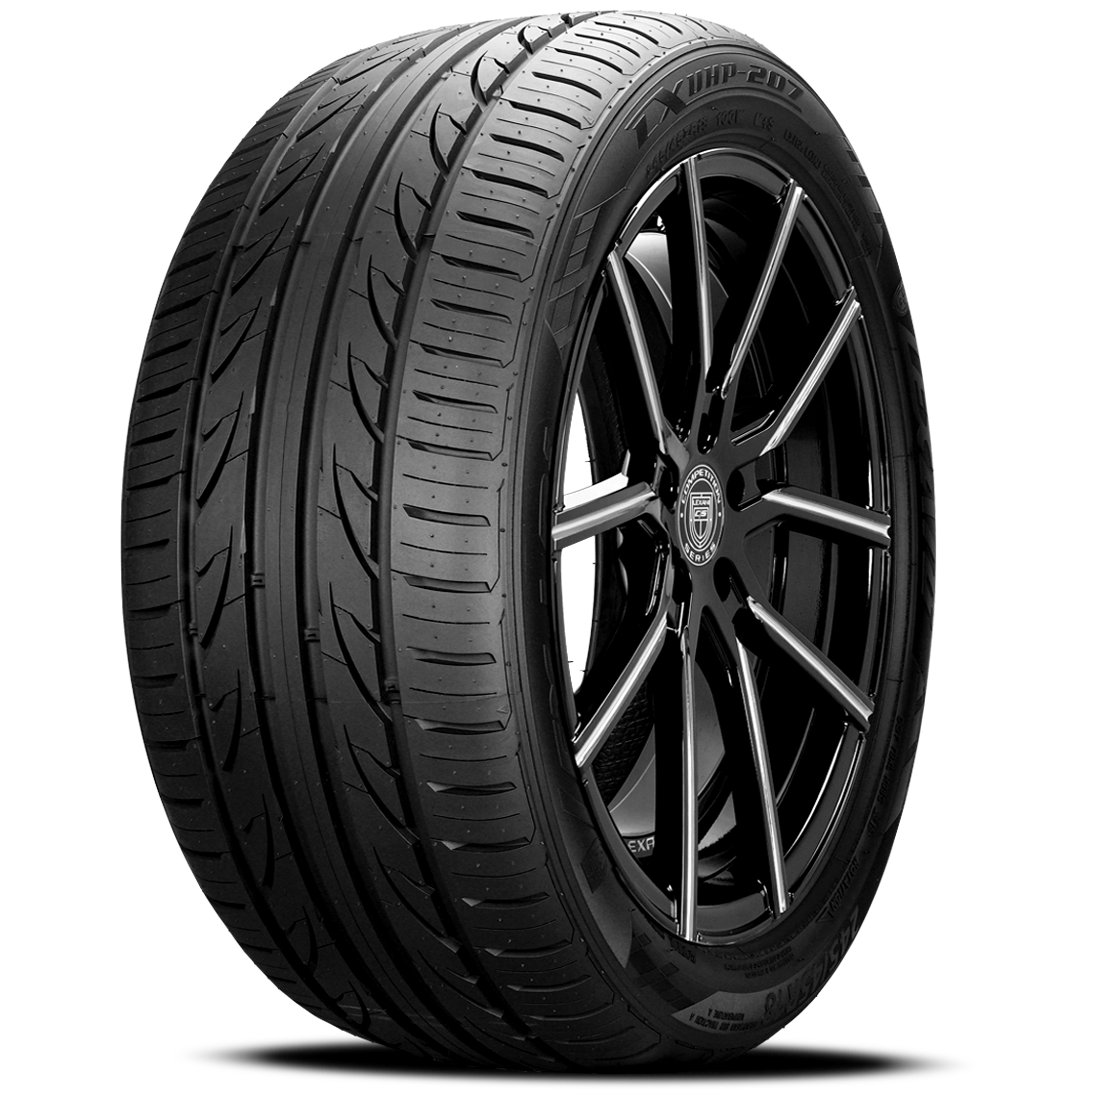 LEXANI LXUHP-207 215/55R18 (27.3X8.5R 18) Tires